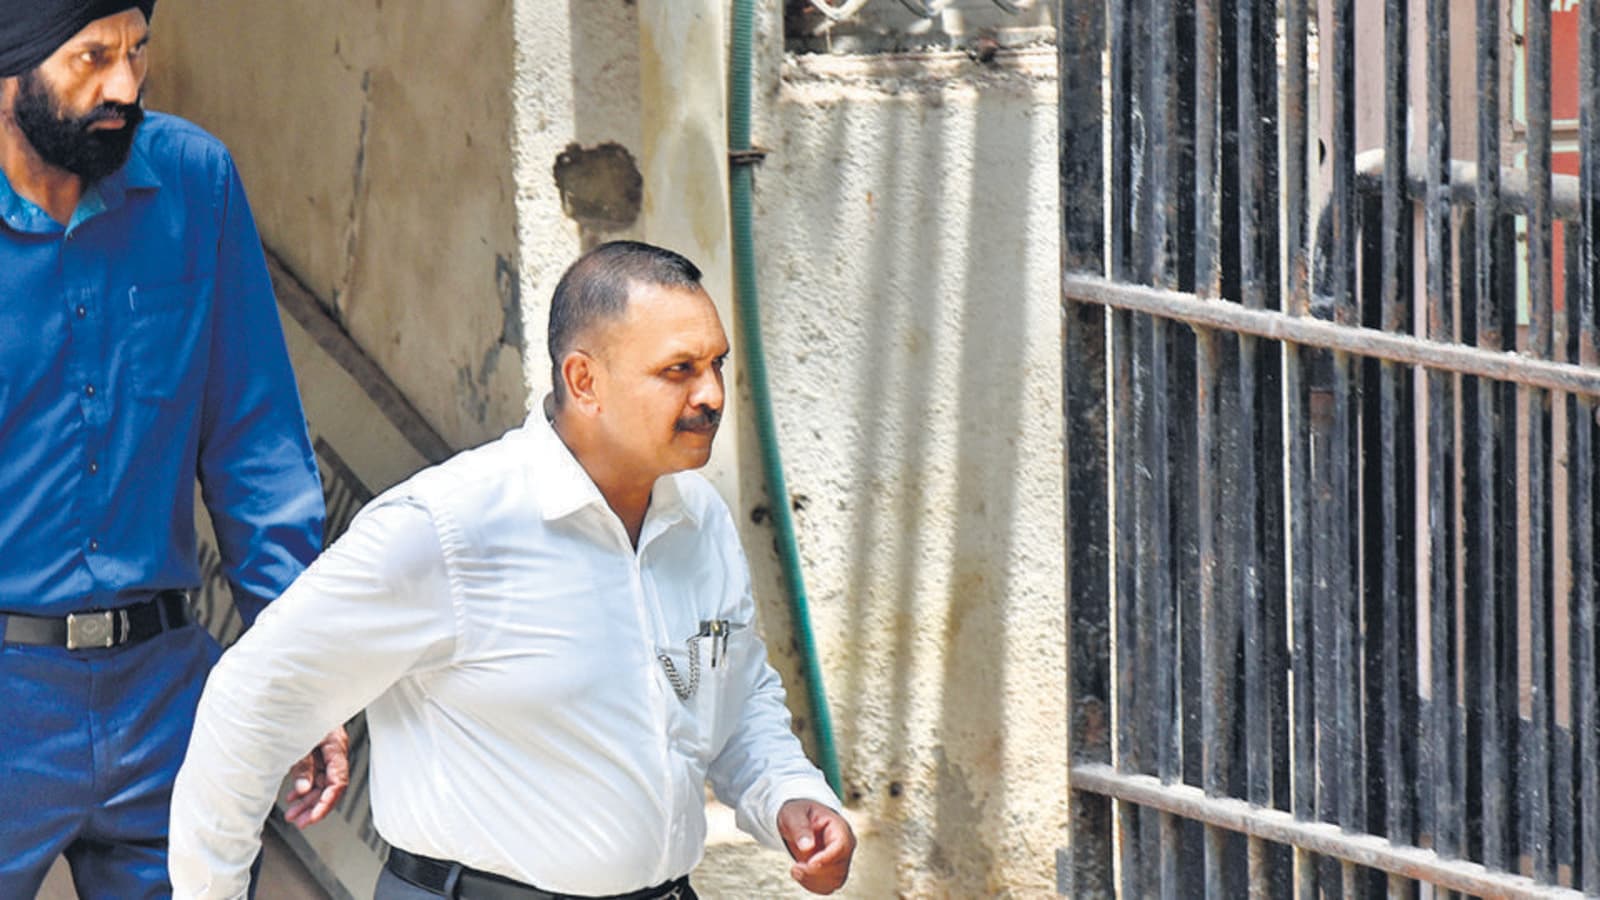 Malegaon 2008 blast case: Accused moves plea for in-camera trial